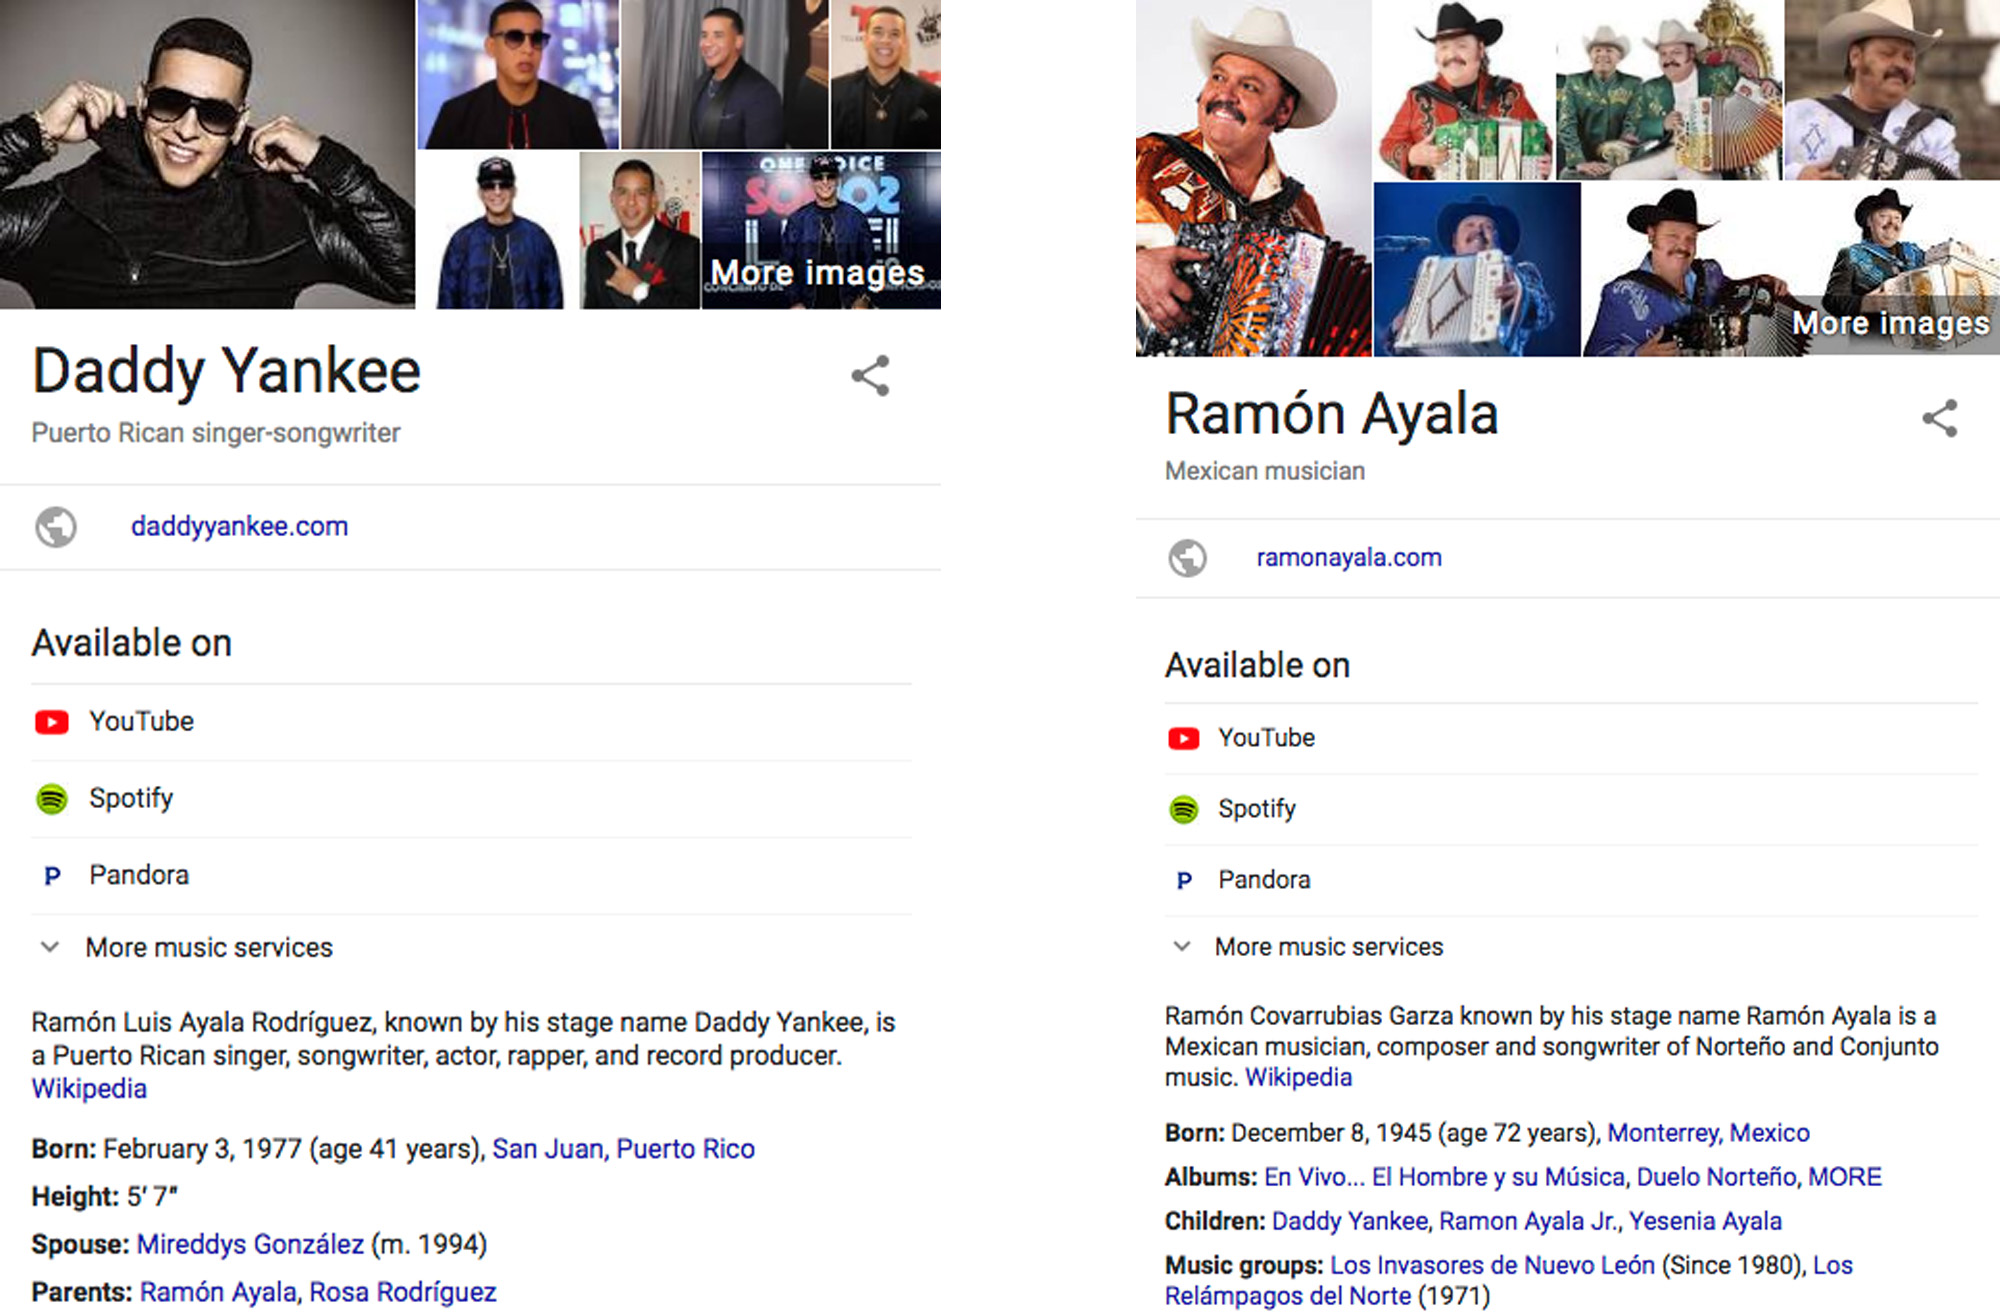 Resultados de Google de Daddy Yankee y Ramón Ayala